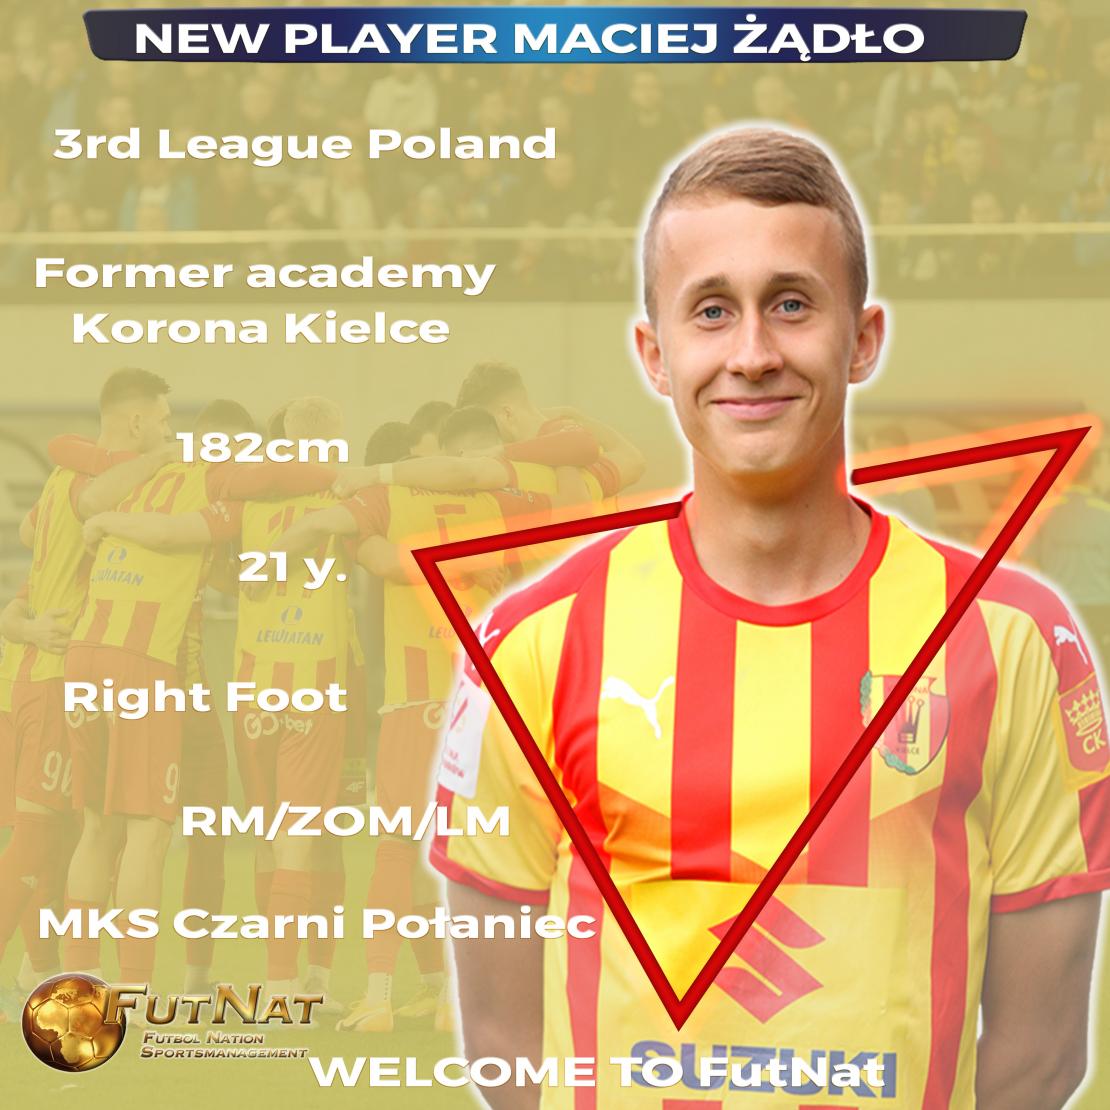 New player at FutNat - Maciej Żądło 